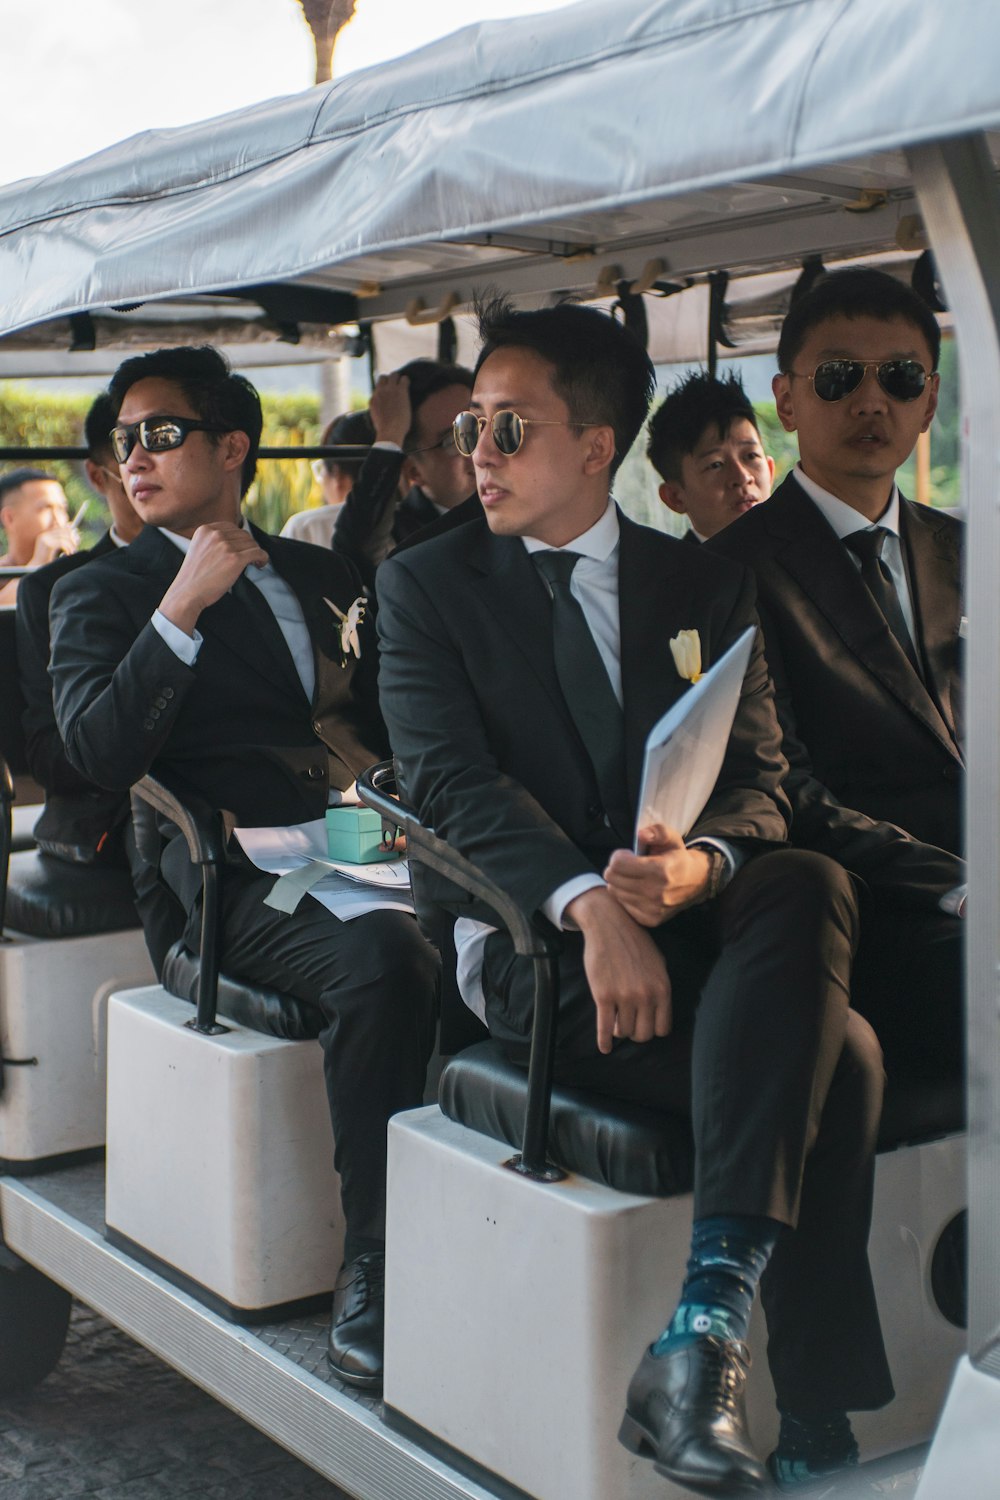 Eine Gruppe von Männern in Anzügen, die auf einem Golfwagen sitzen